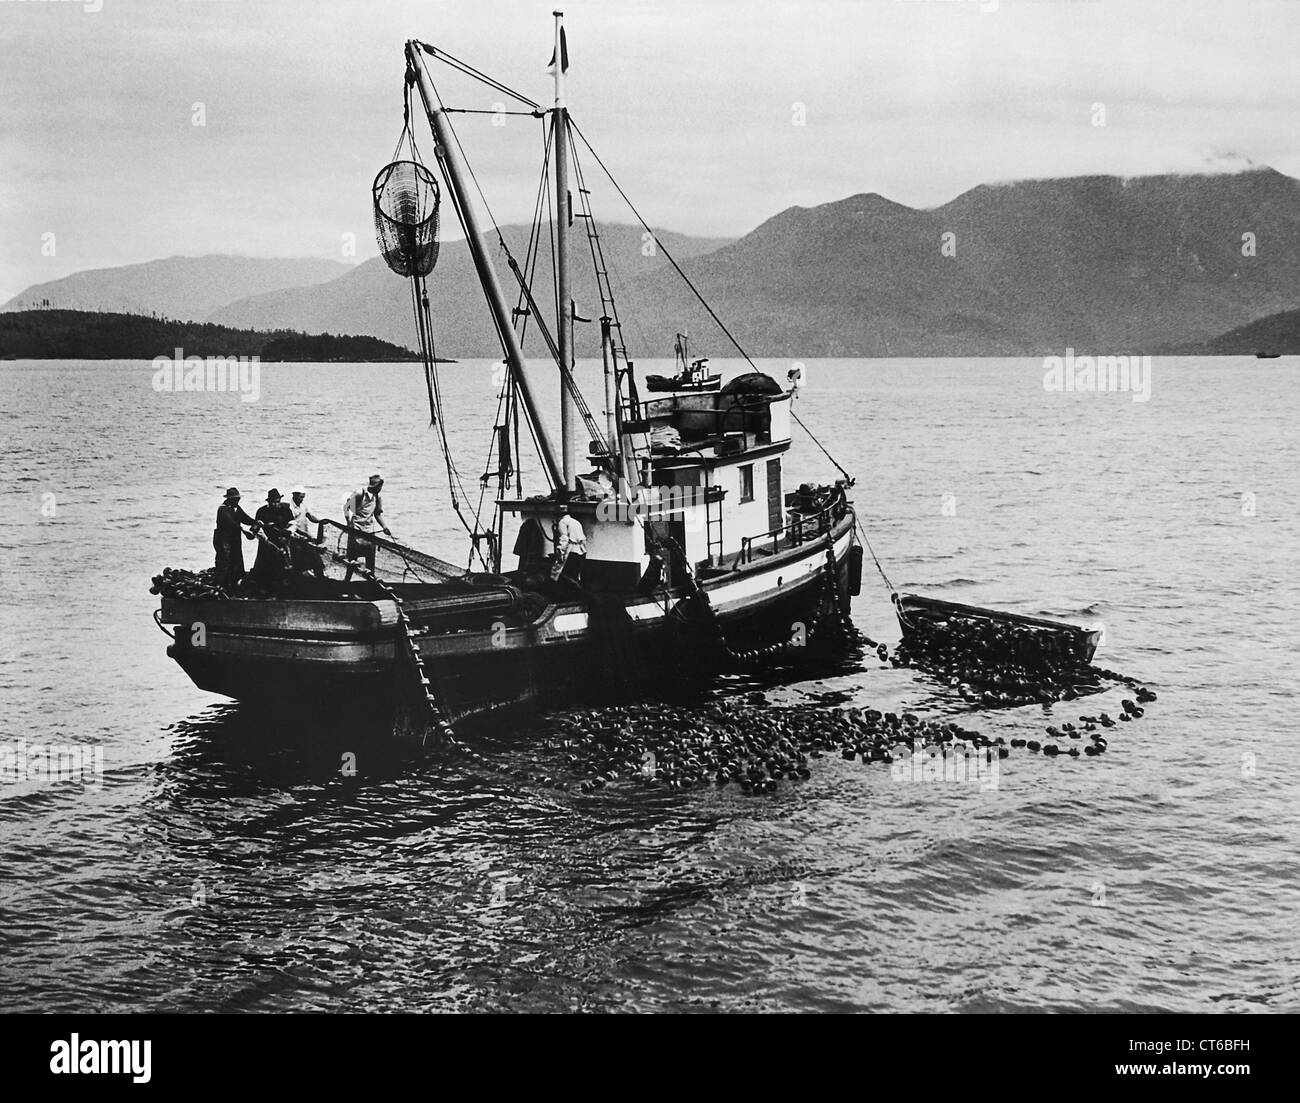 Les pêcheurs de saumon de travailler sur un bateau, British Columbia, Canada Banque D'Images